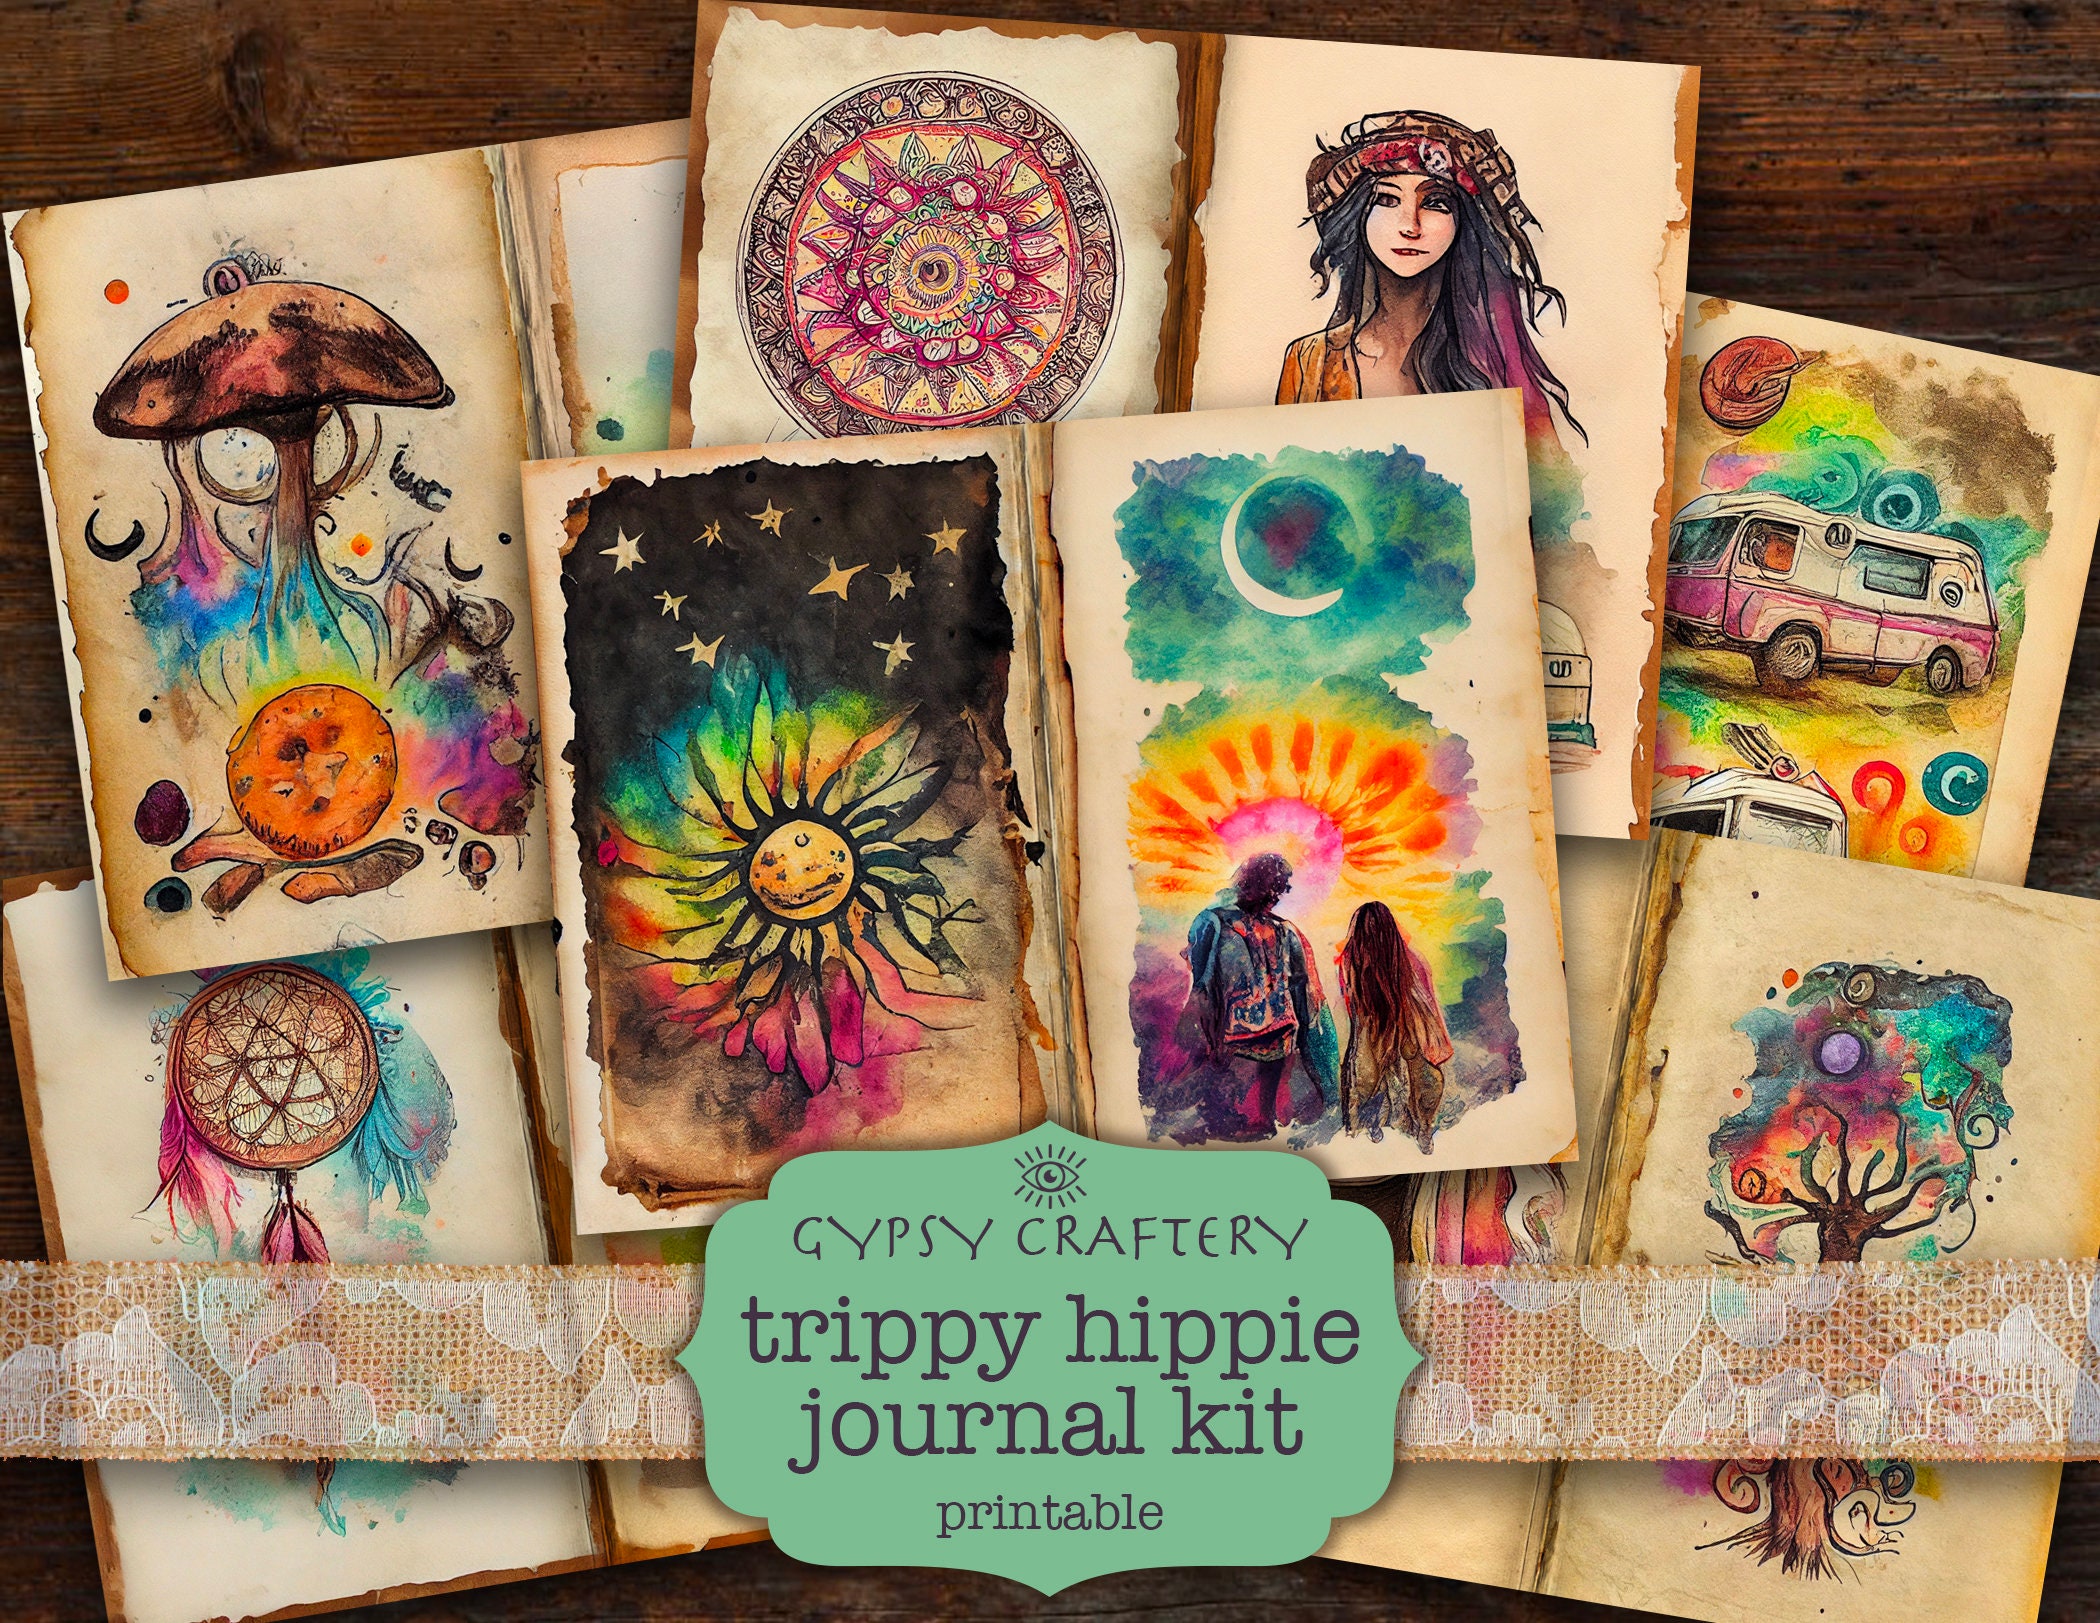 DIY Journal Kit for Girls - 48pcs DIY Journal Set for Tween & Teen Girls,  Stationery Set, Scrapbook & Diary Supplies Set, Journaling Art Crafts Kit